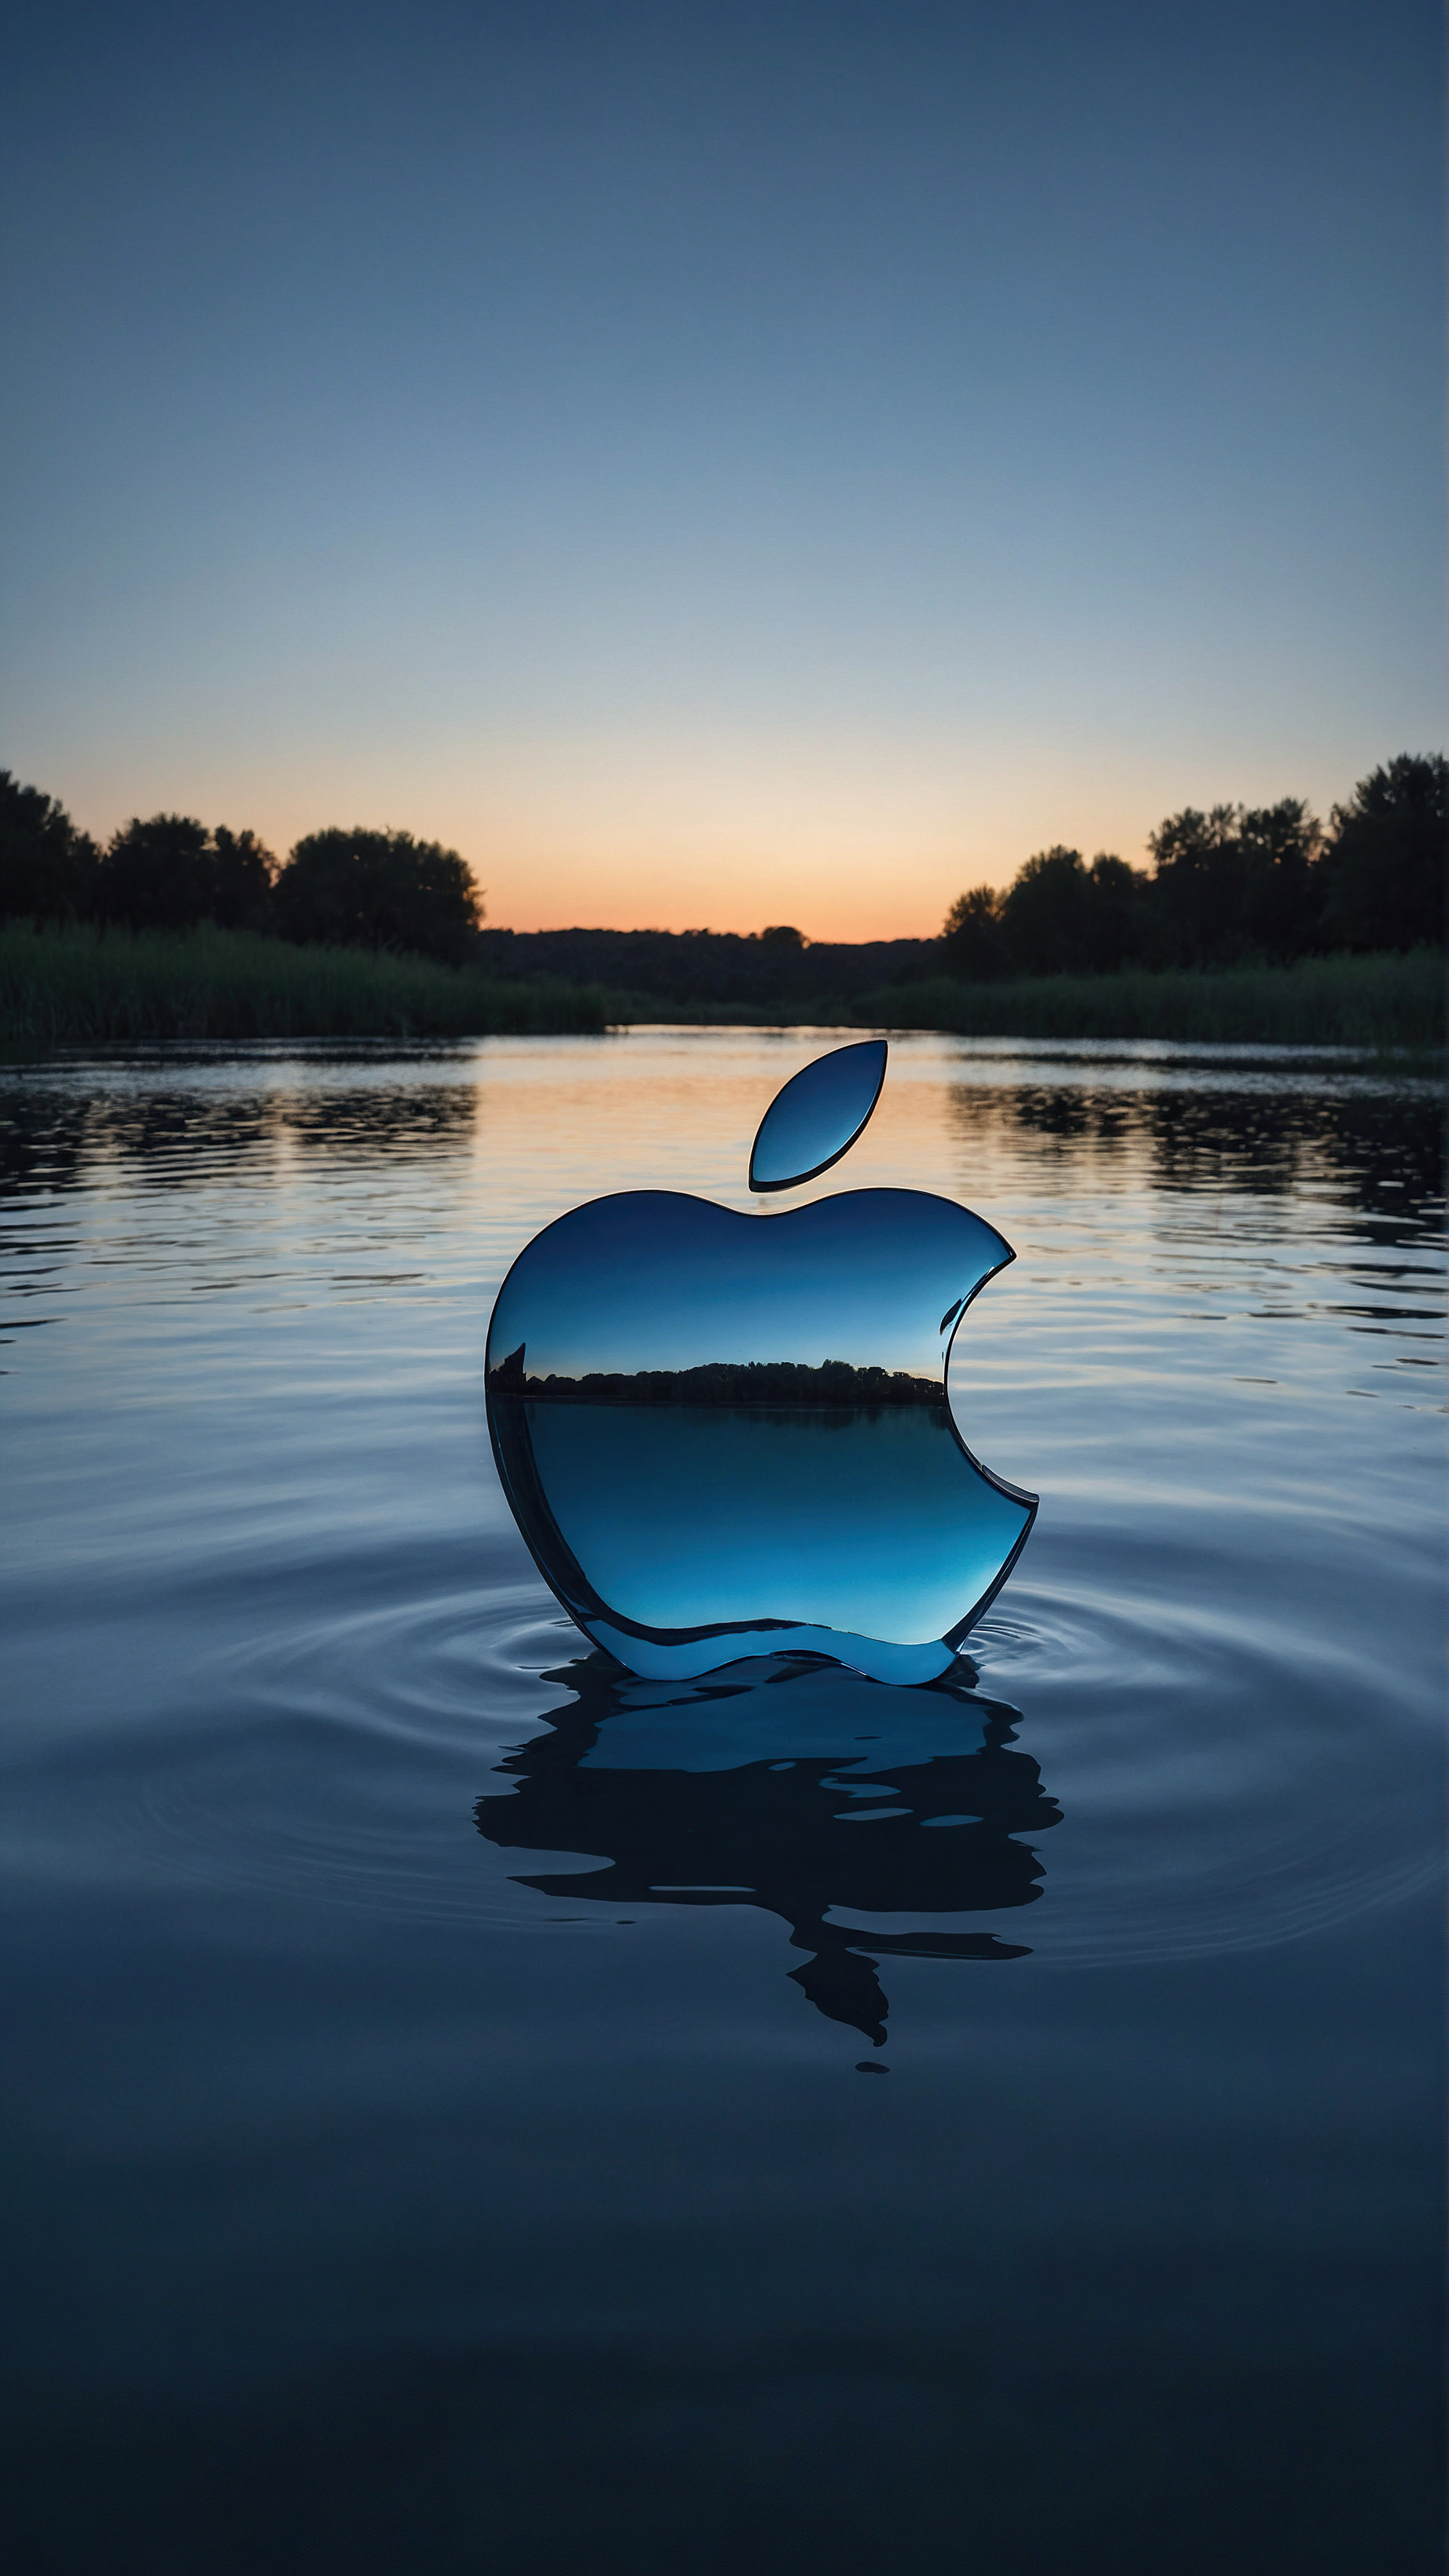 Ornez votre écran avec un fond d'écran en 4K pour iPhone, présentant un paysage serein à l'aube, avec des eaux tranquilles reflétant les teintes douces du ciel et un logo Apple emblématique brillant semblant flotter au-dessus de la surface de l'eau. 